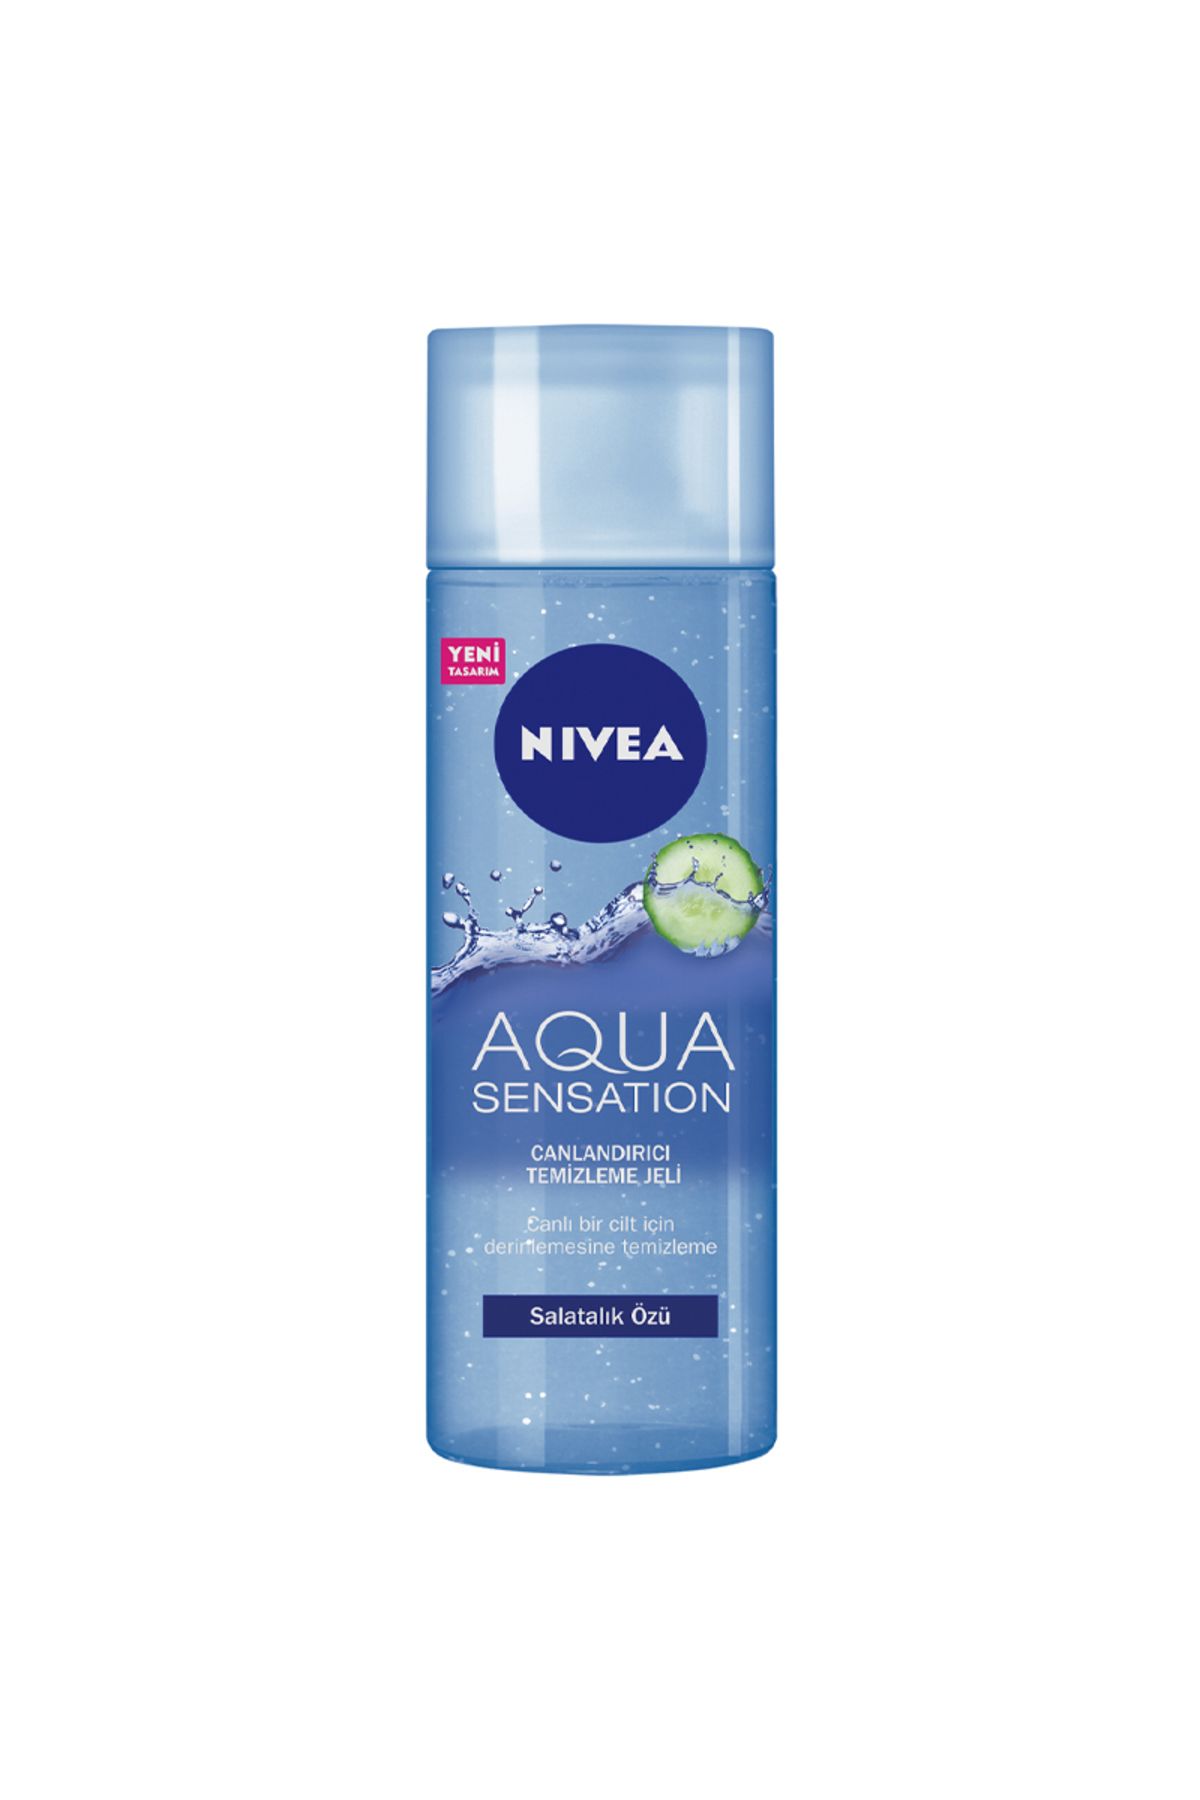 NIVEA Aqua Sensation Salatalık Özlü Yüz Temizleme Jeli 200 ml